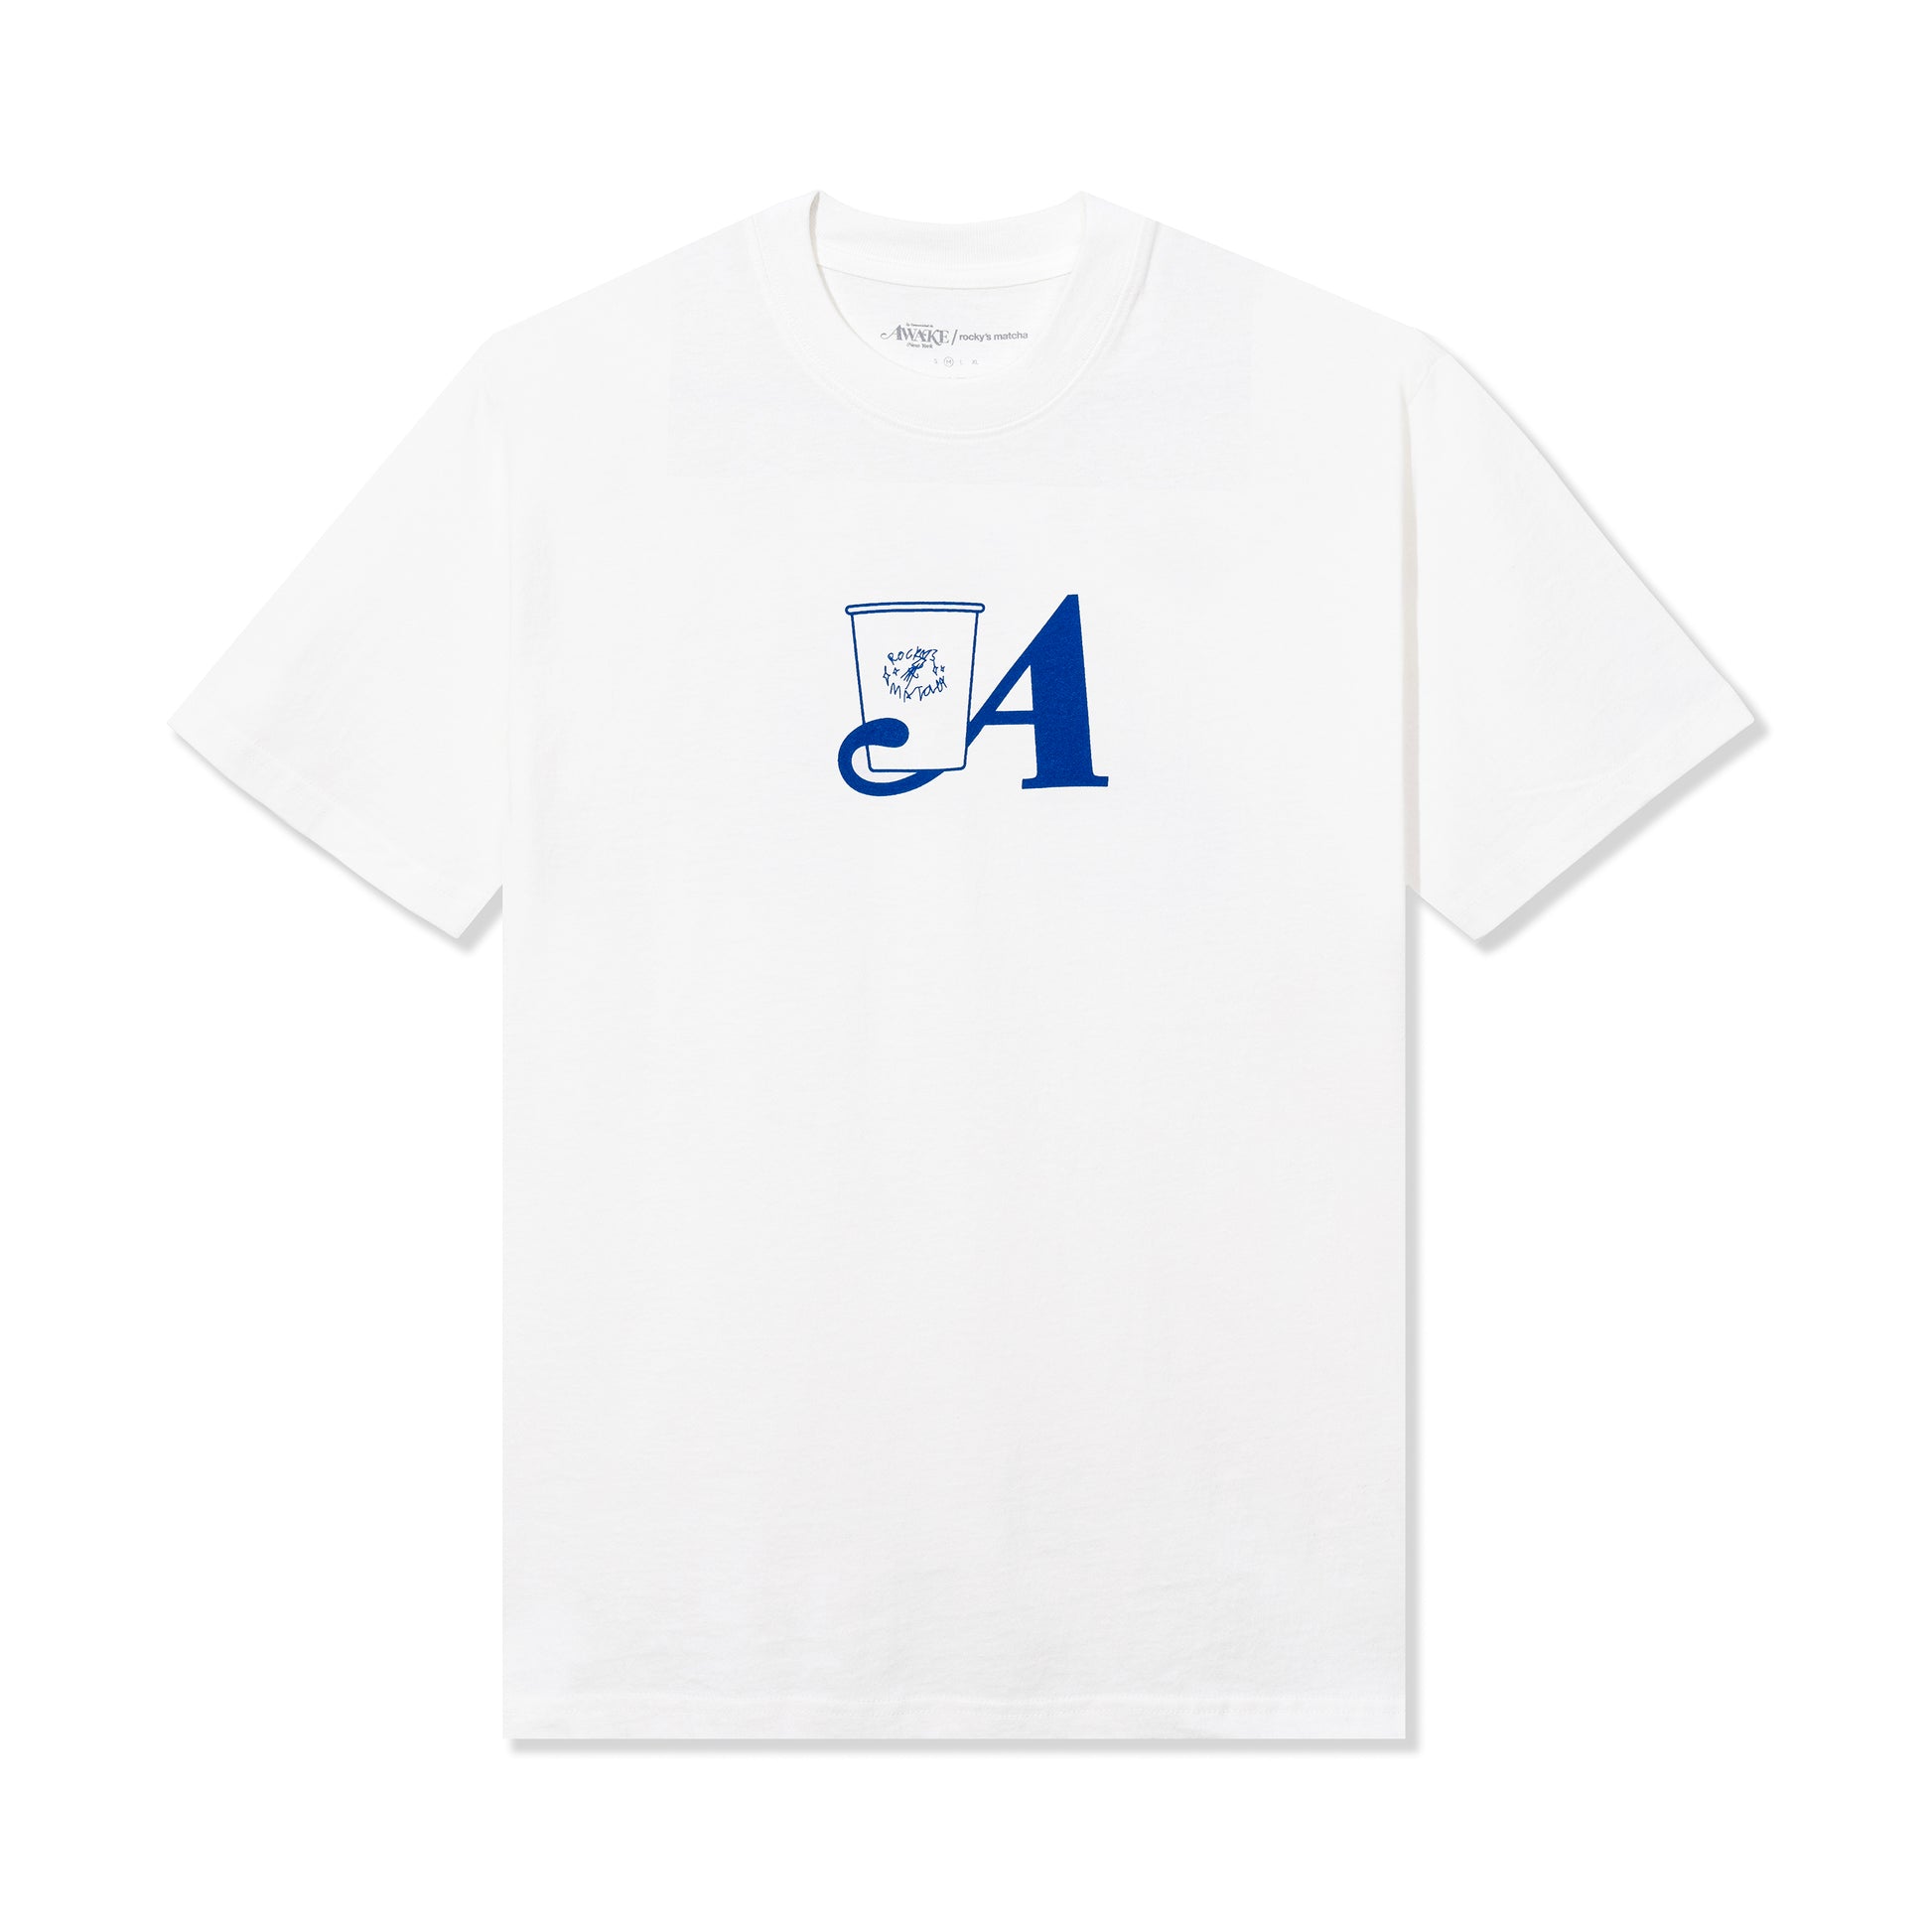 Rocky's Matcha & Awake NY T-Shirt - White